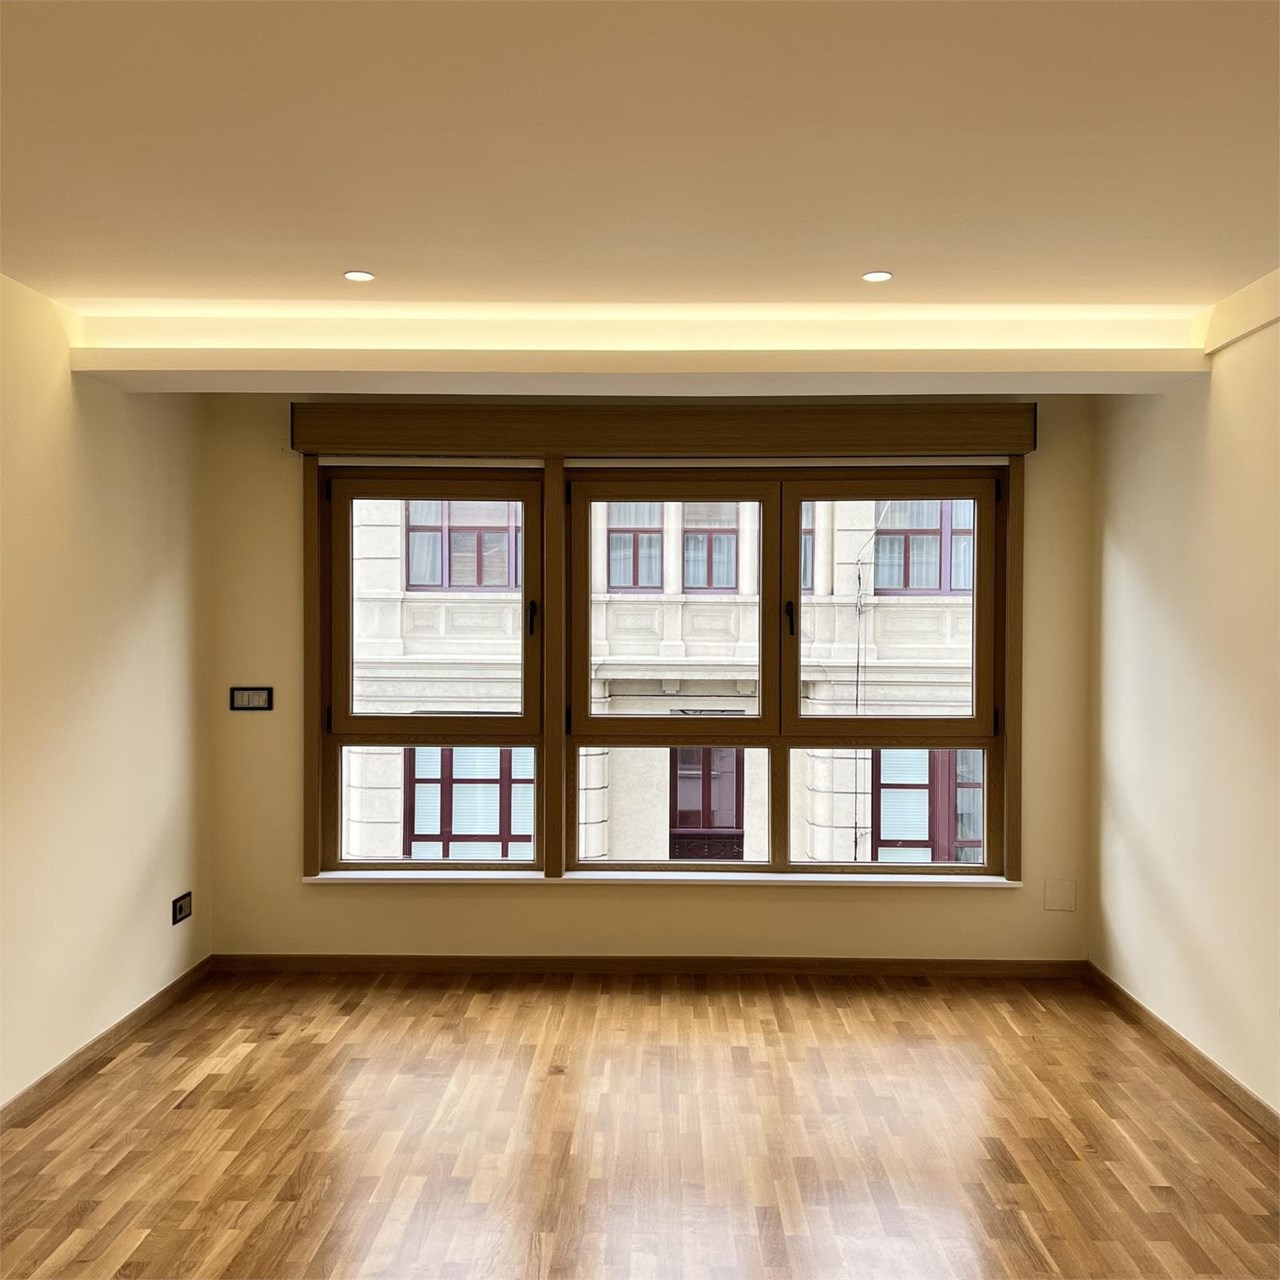 Foto 3 Apartamento en Teresa Herrera, ubicado en el Ensanche de A Coruña